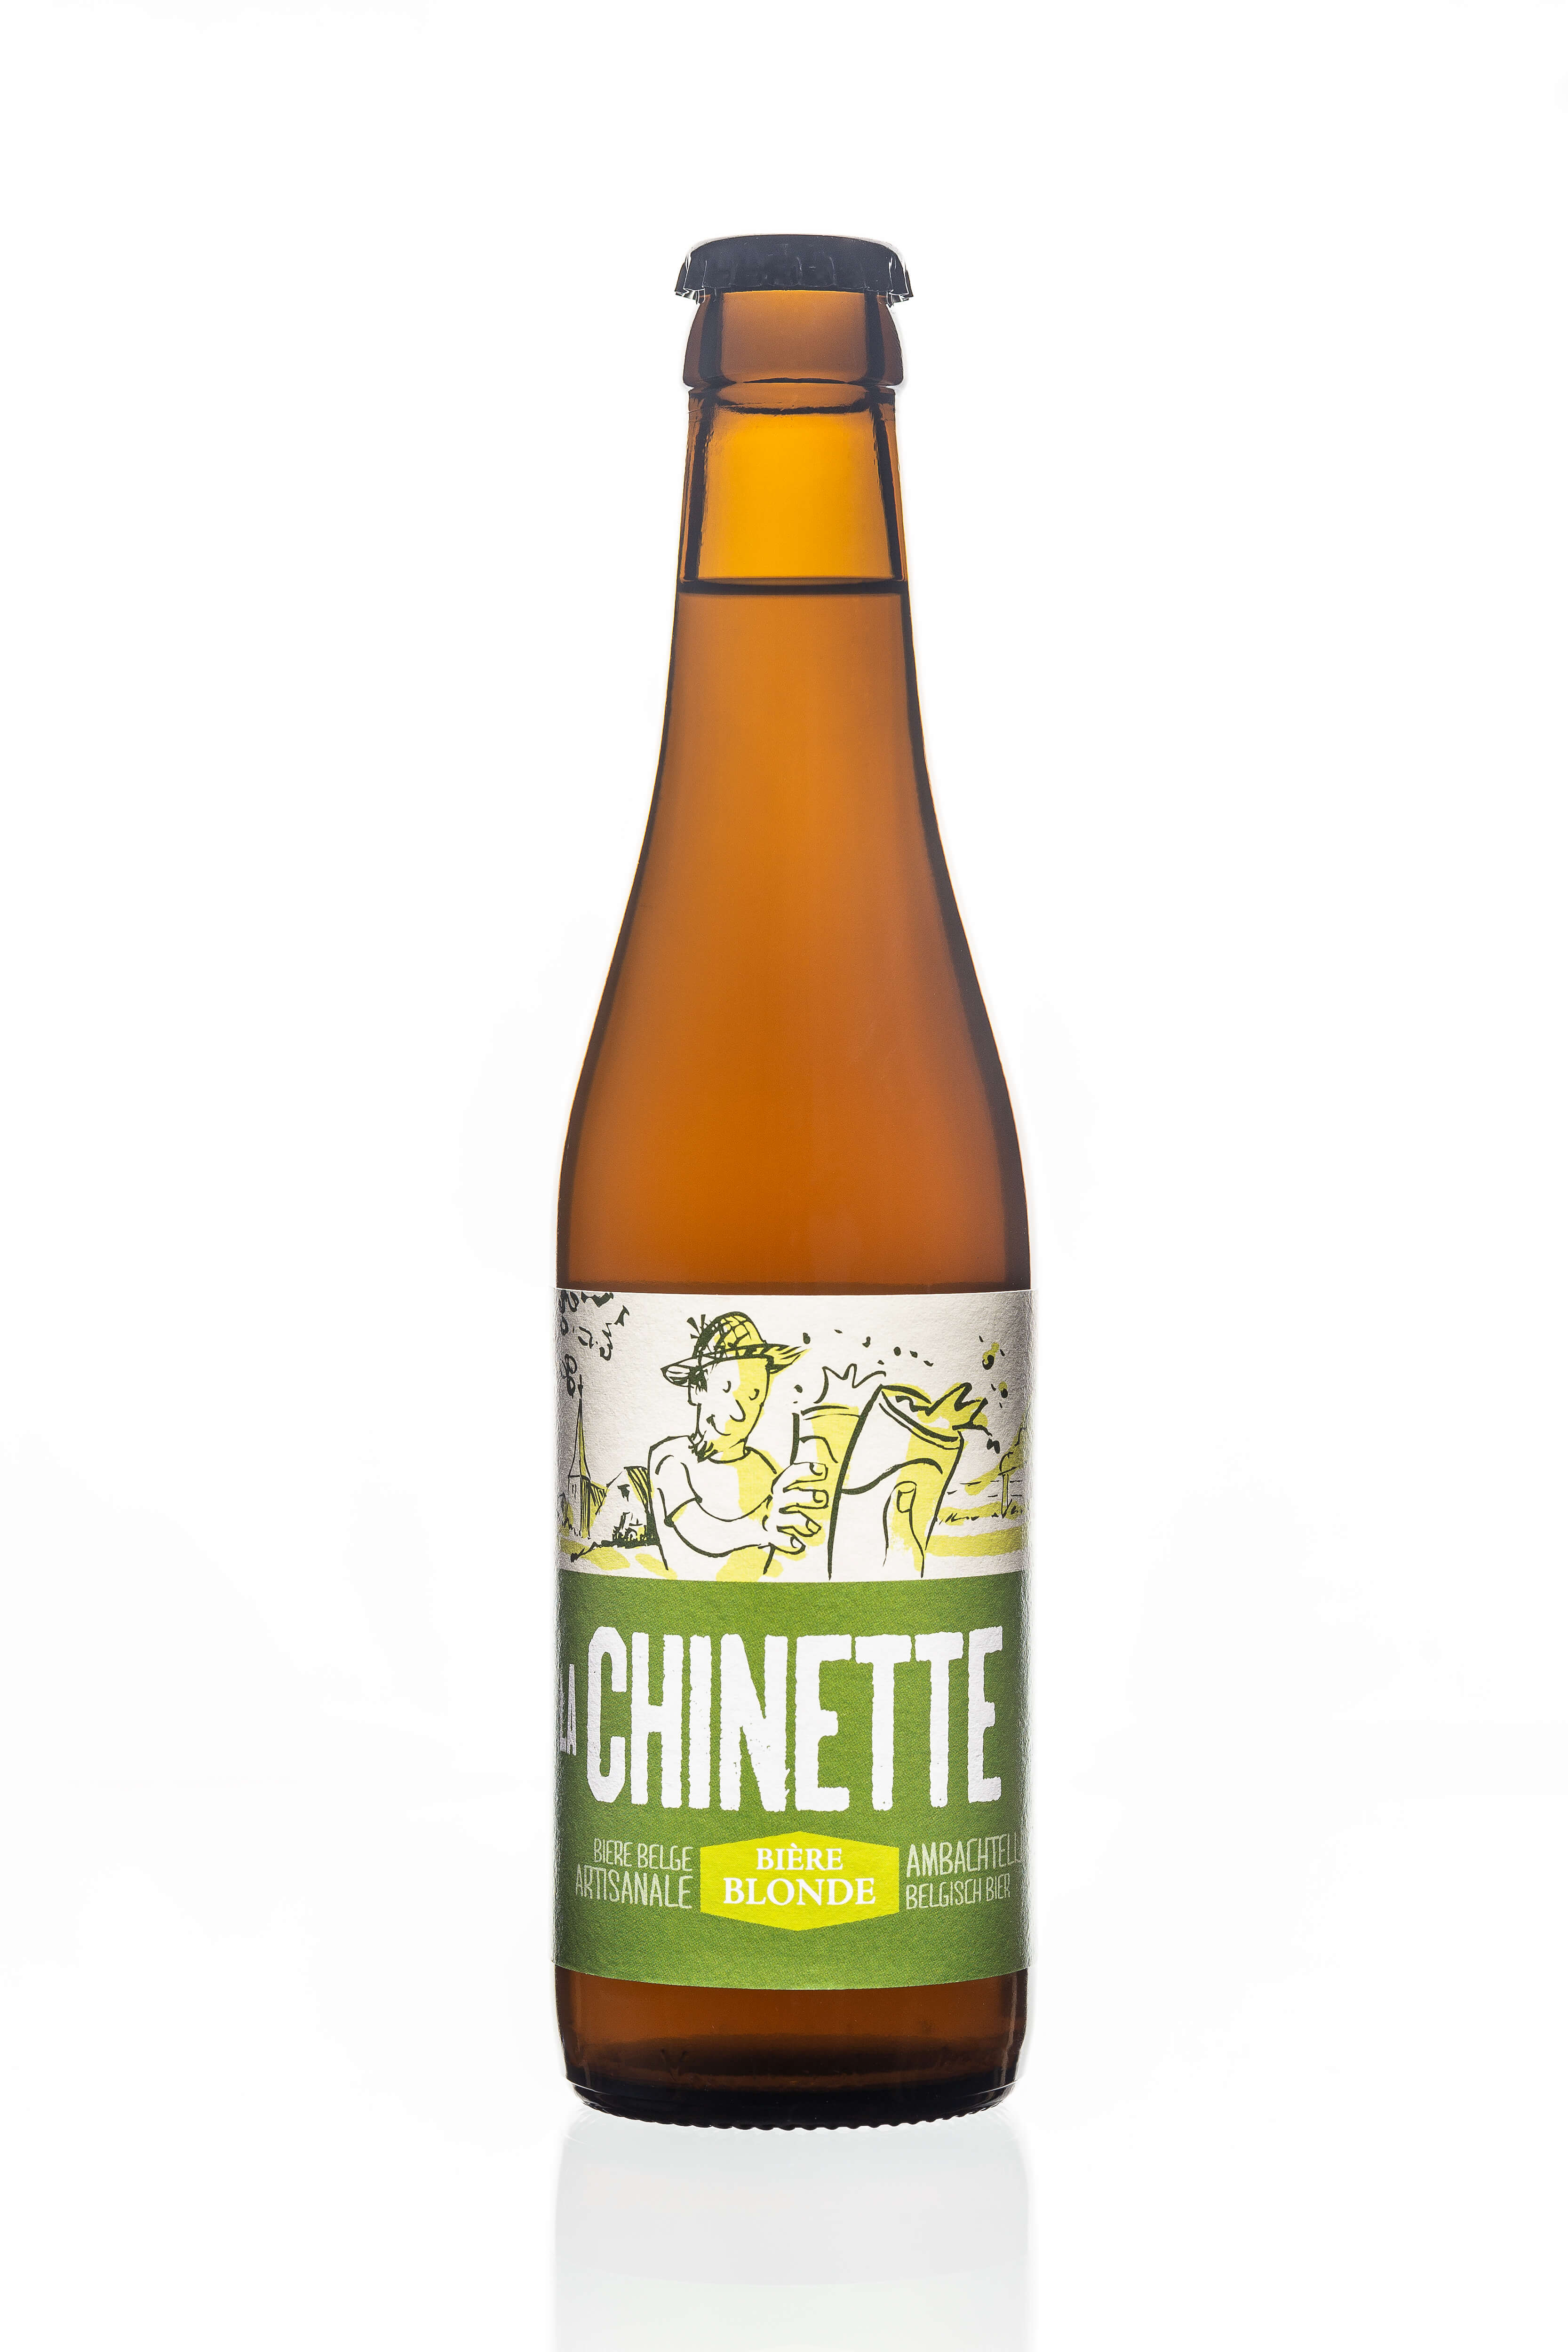 Brasserie de La Lesse La Chinette blond bier 6% bio 33cl - 5020